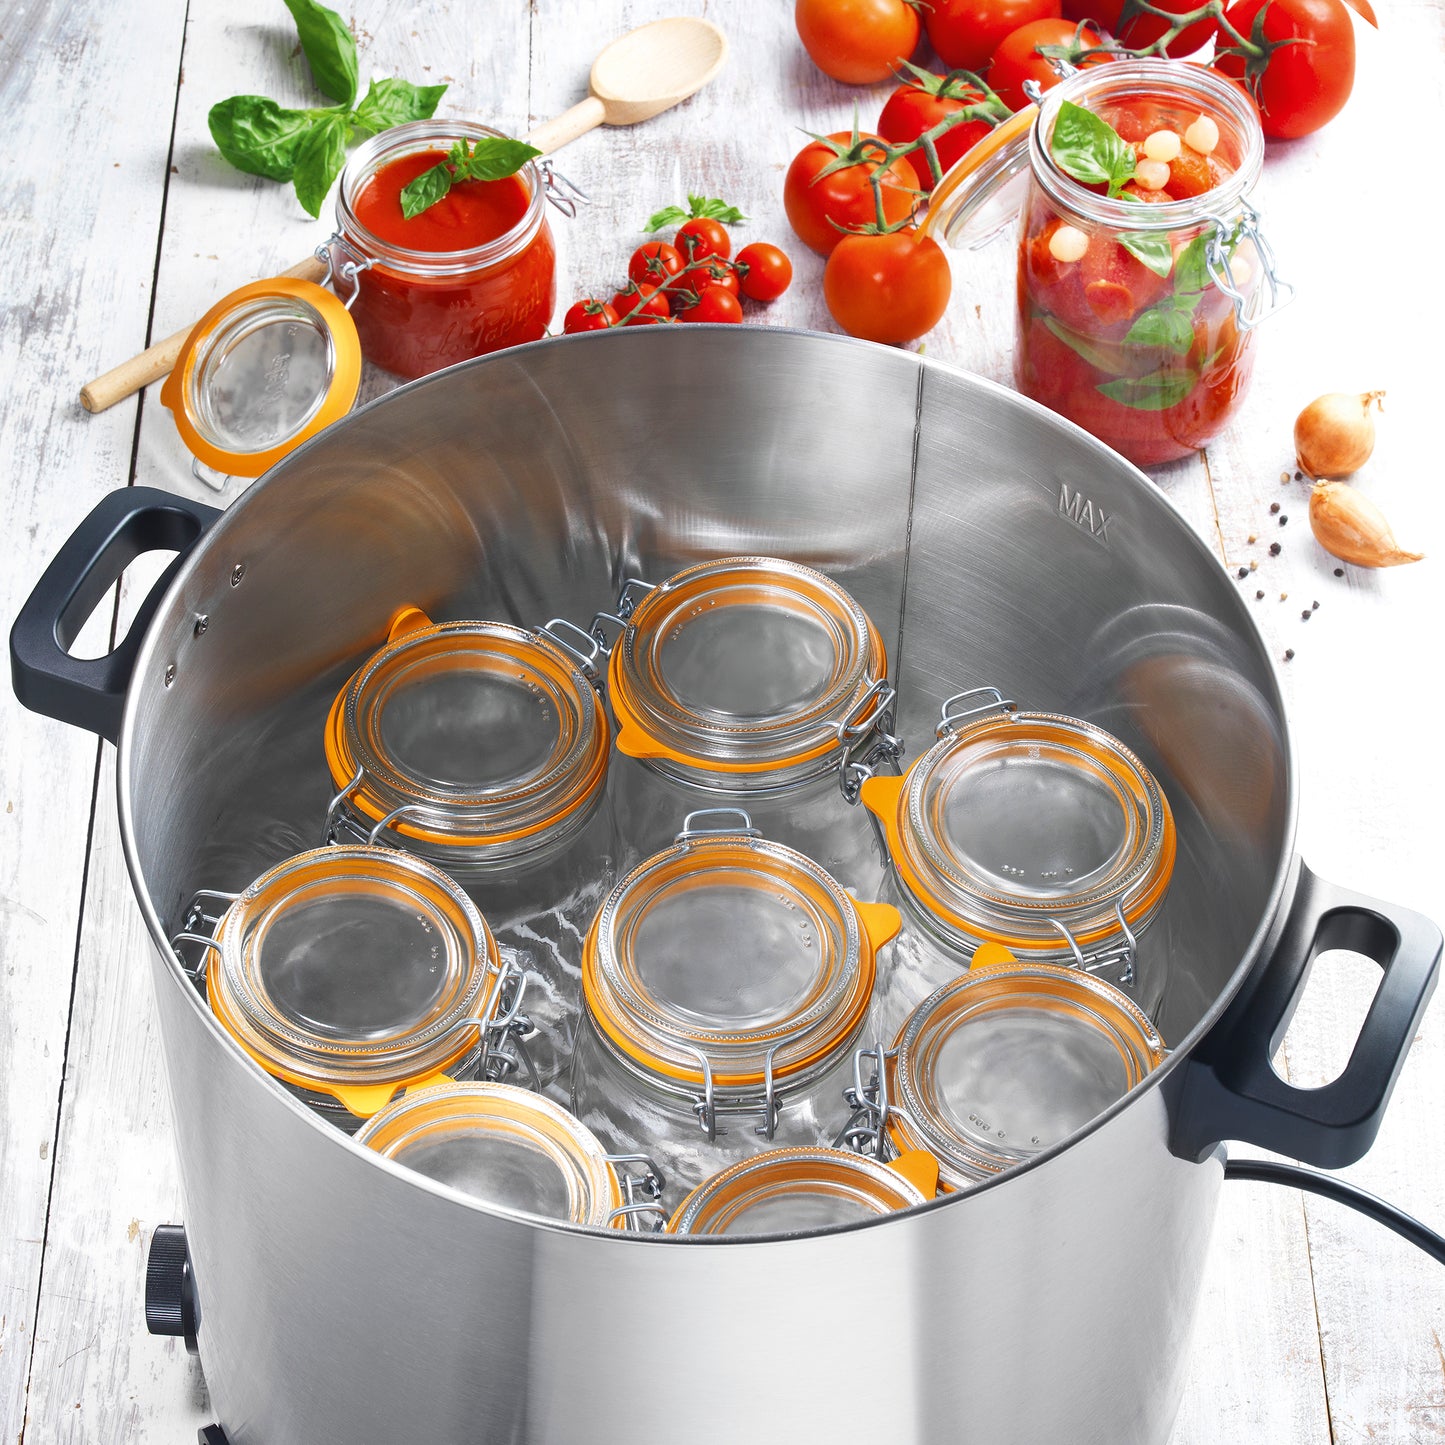 Electric sterilizer for Le Parfait jars - Kitchen Chef